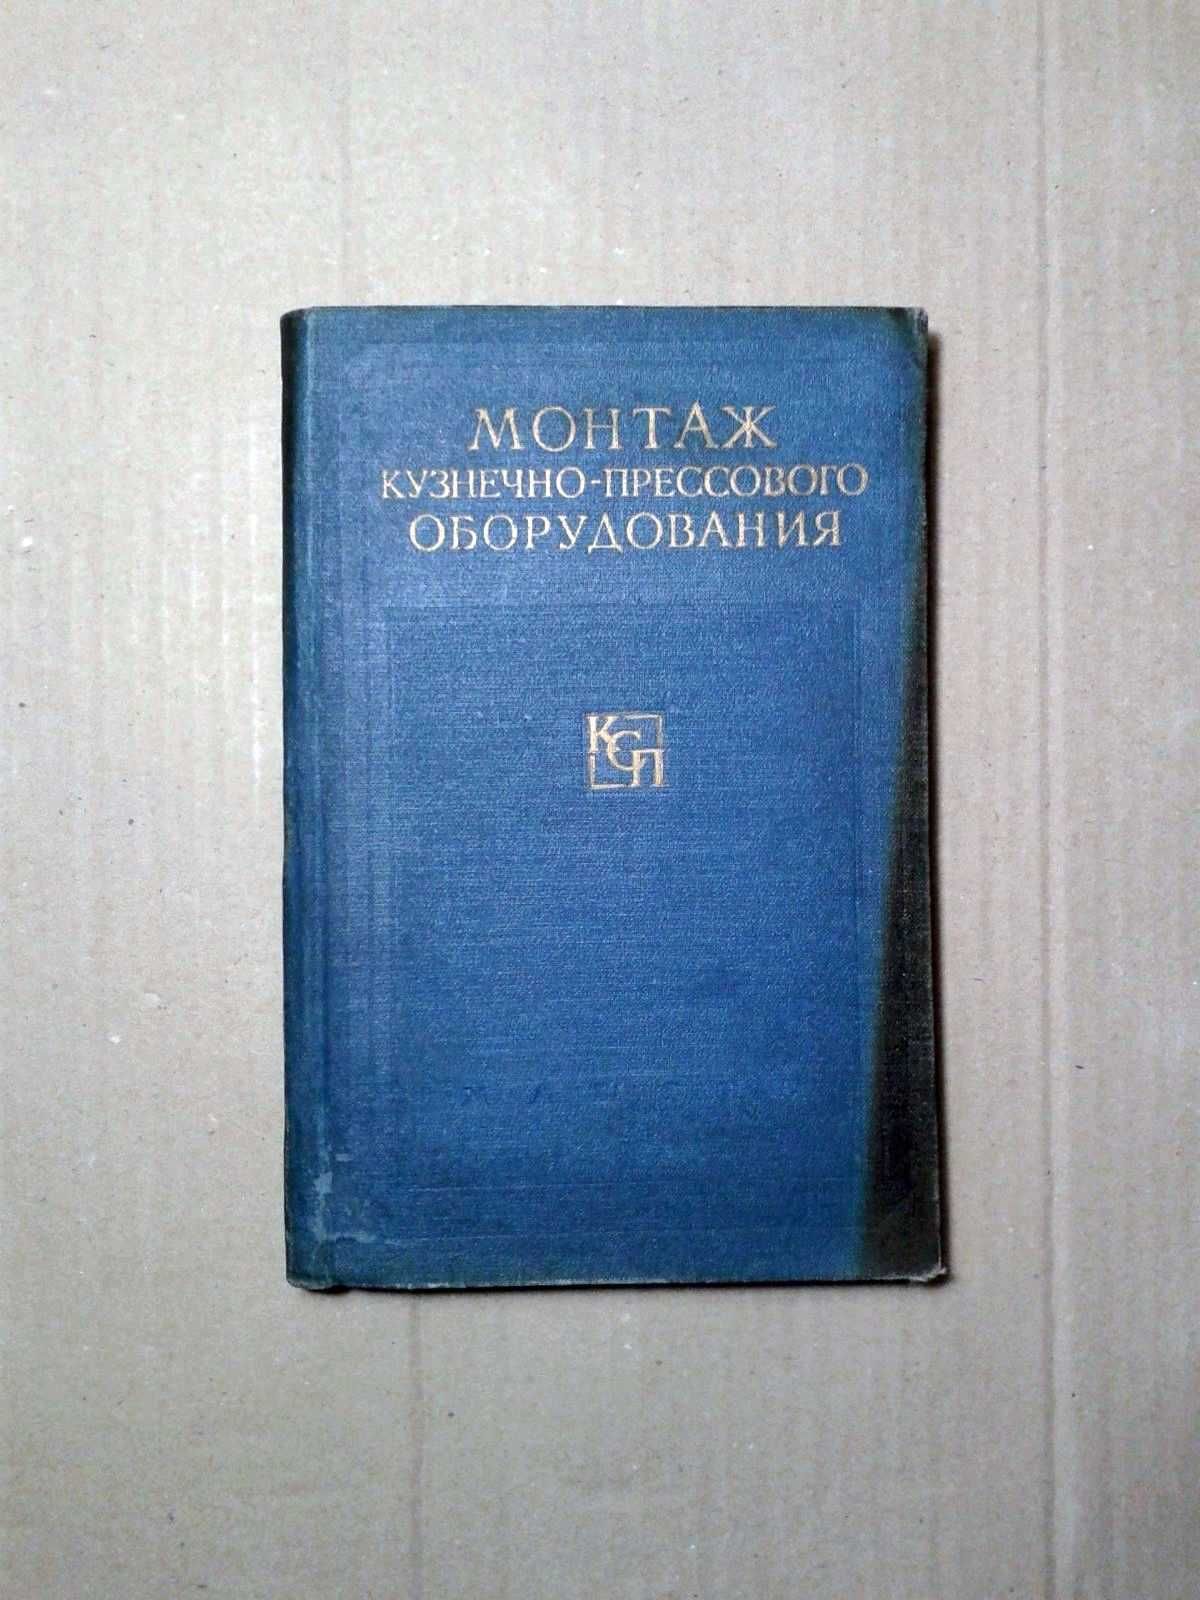 Монтаж кузнечно-прессового оборудования "МАШГИЗ" 1958